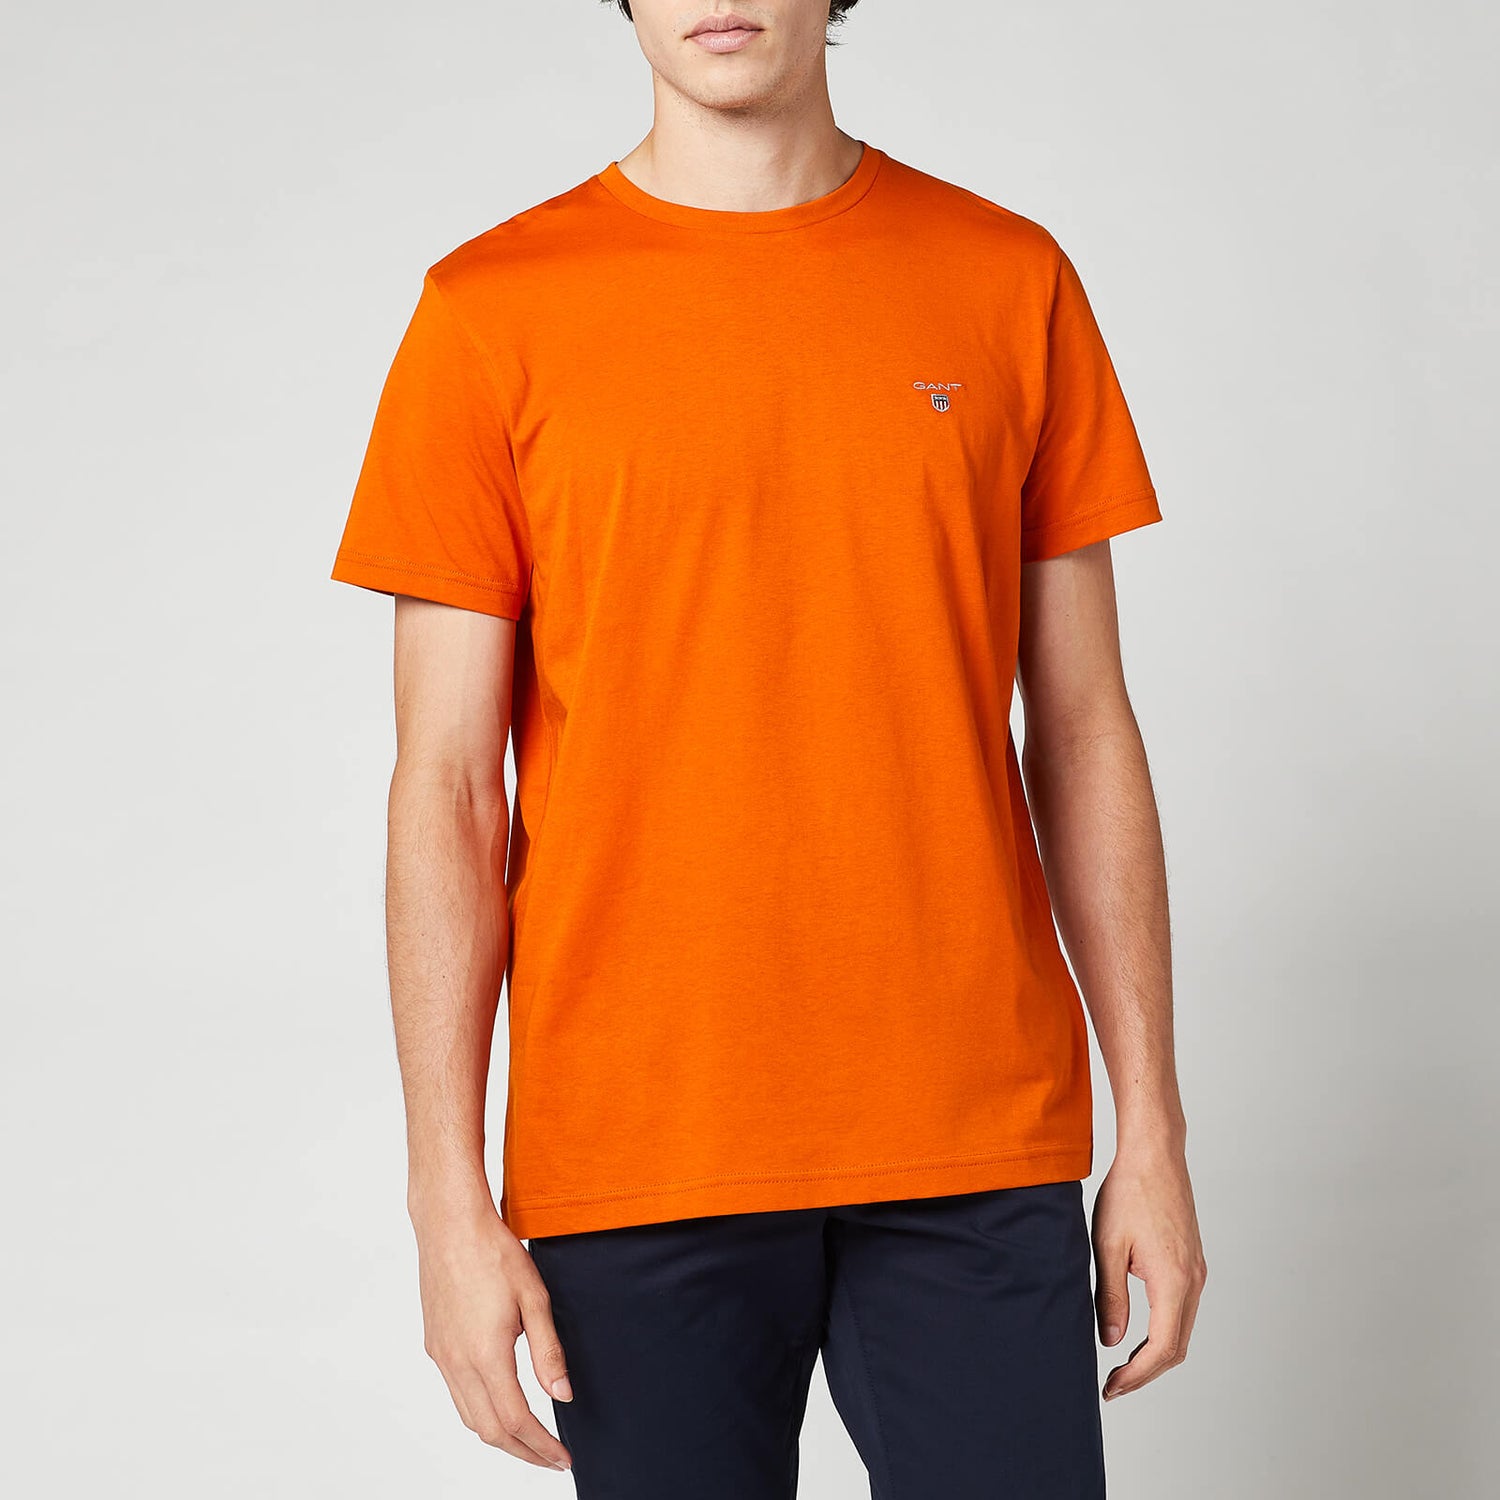 GANT Men's Original Short Sleeve T-Shirt - Savannah Orange